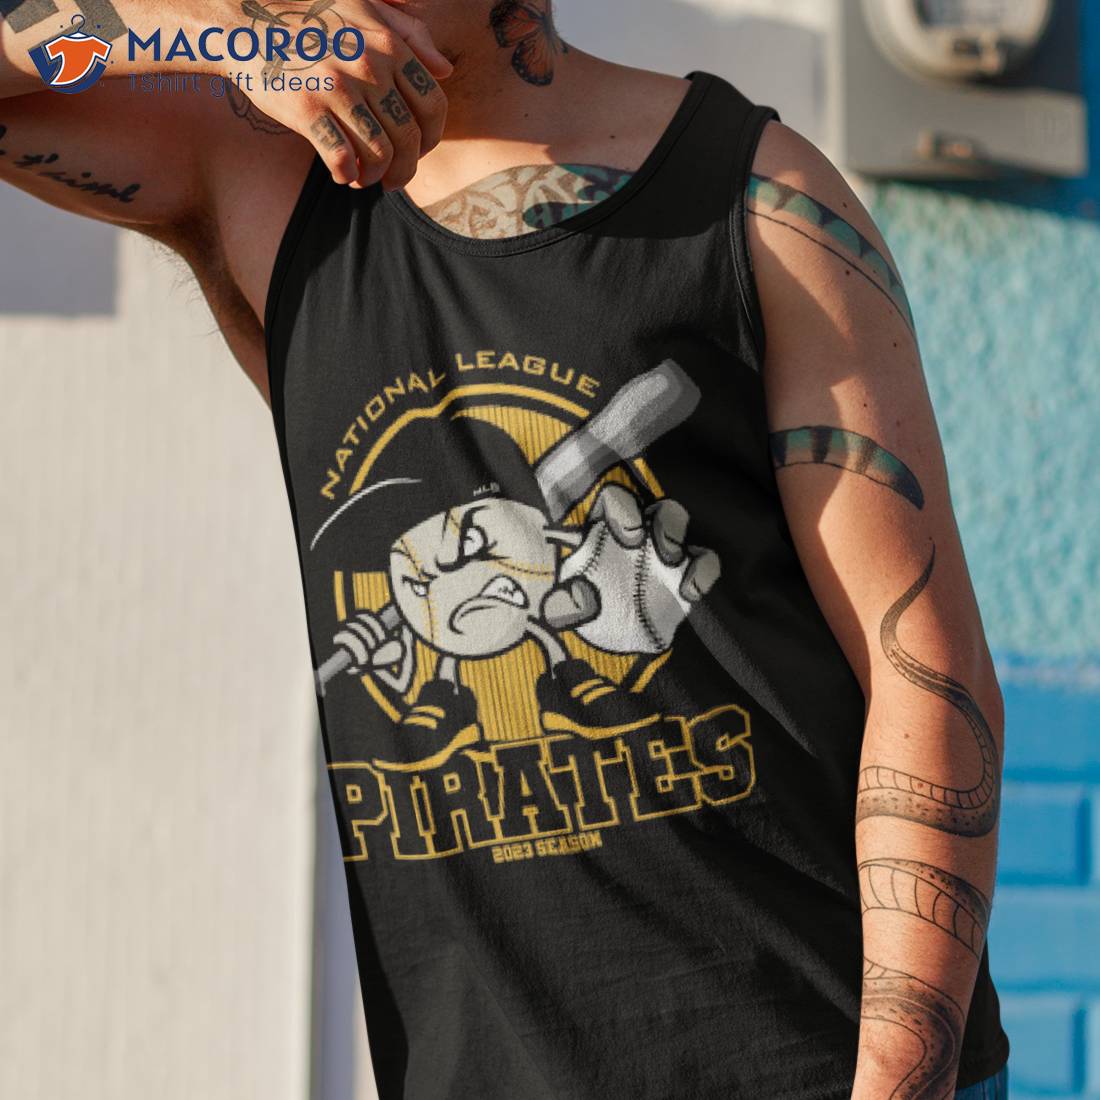 Pittsburgh Pirates Stitch CUSTOM Baseball Jersey -  Worldwide  Shipping